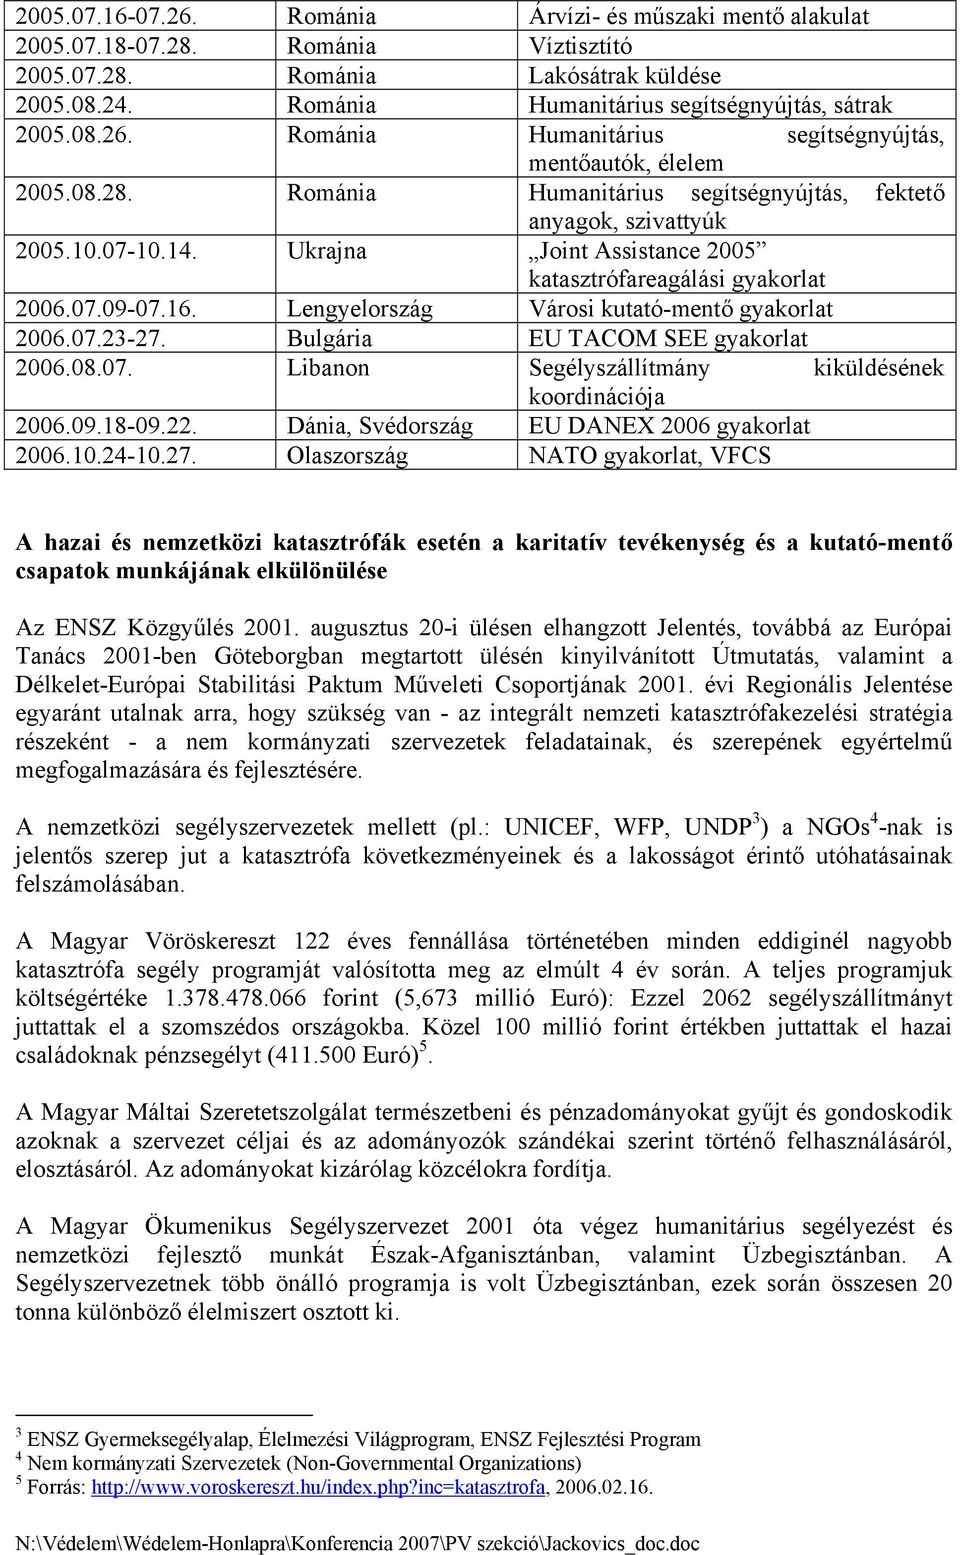 Ukrajna Joint Assistance 2005 katasztrófareagálási gyakorlat 2006.07.09-07.16. Lengyelország Városi kutató-mentő gyakorlat 2006.07.23-27. Bulgária EU TACOM SEE gyakorlat 2006.08.07. Libanon Segélyszállítmány kiküldésének koordinációja 2006.